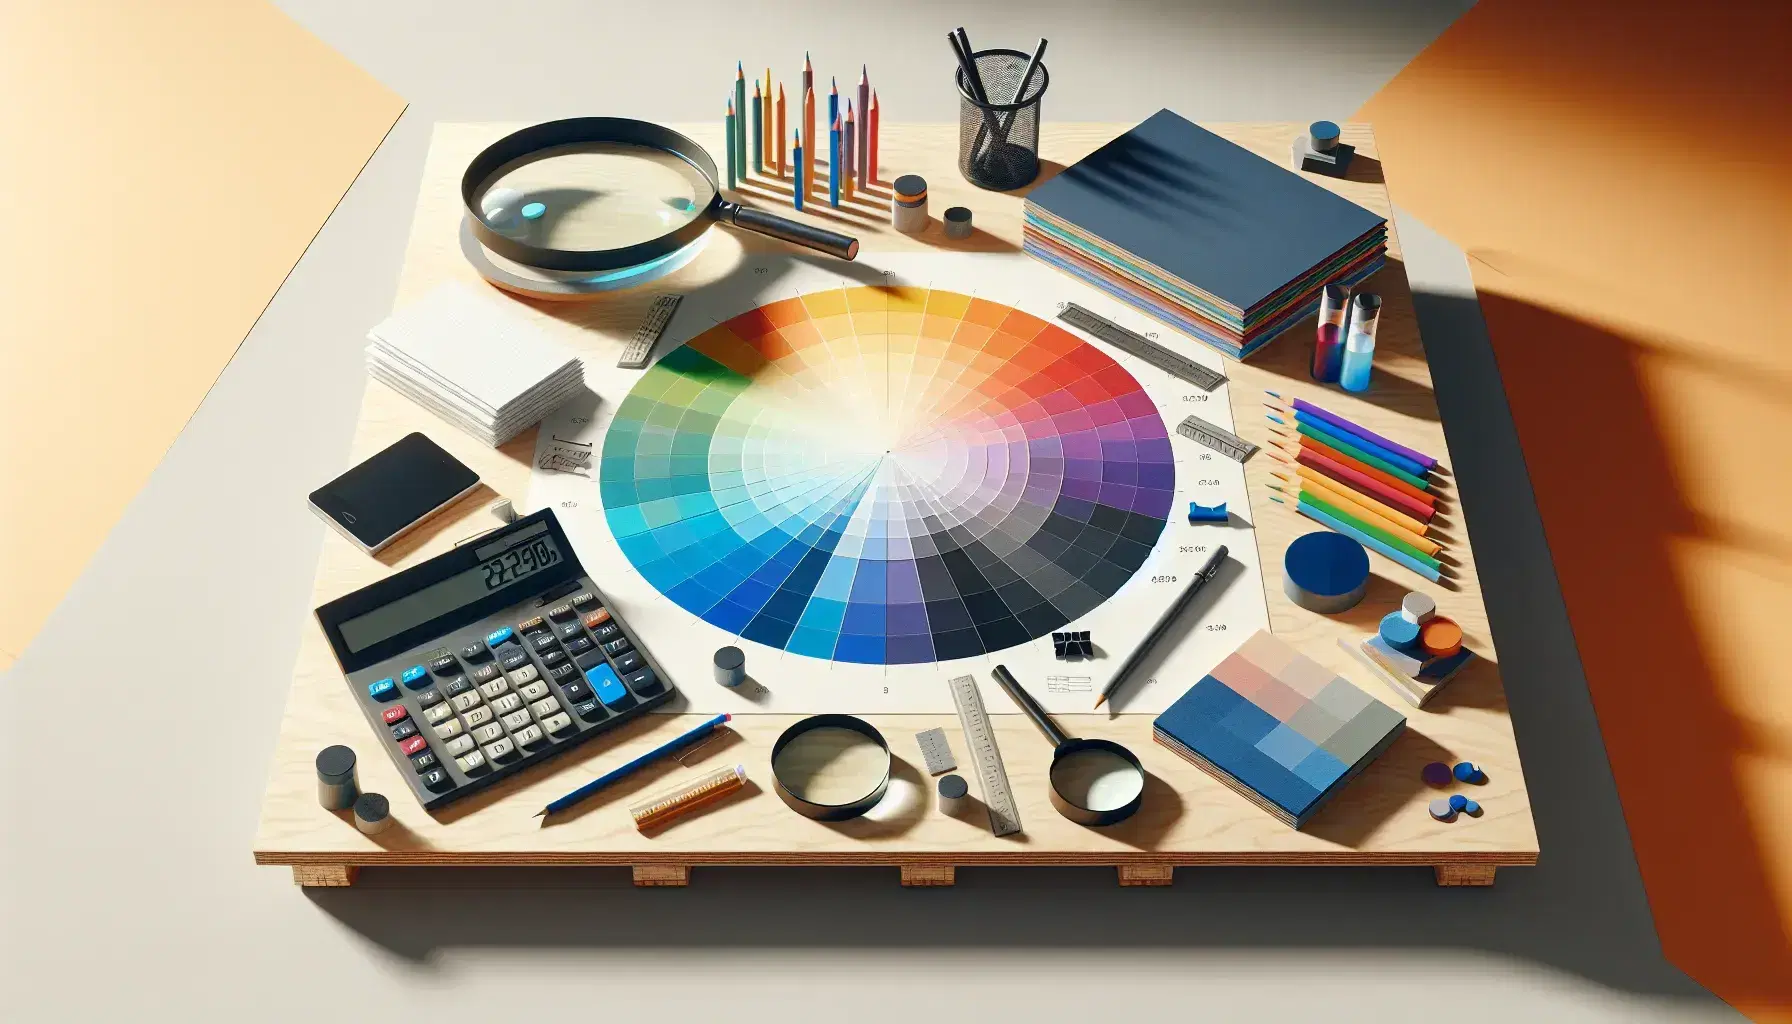 Mesa de madera con gráfico de pastel colorido, calculadora científica, papeles, lápiz y fichas de cartón, junto a lupa y probetas con líquidos azul y rojo.